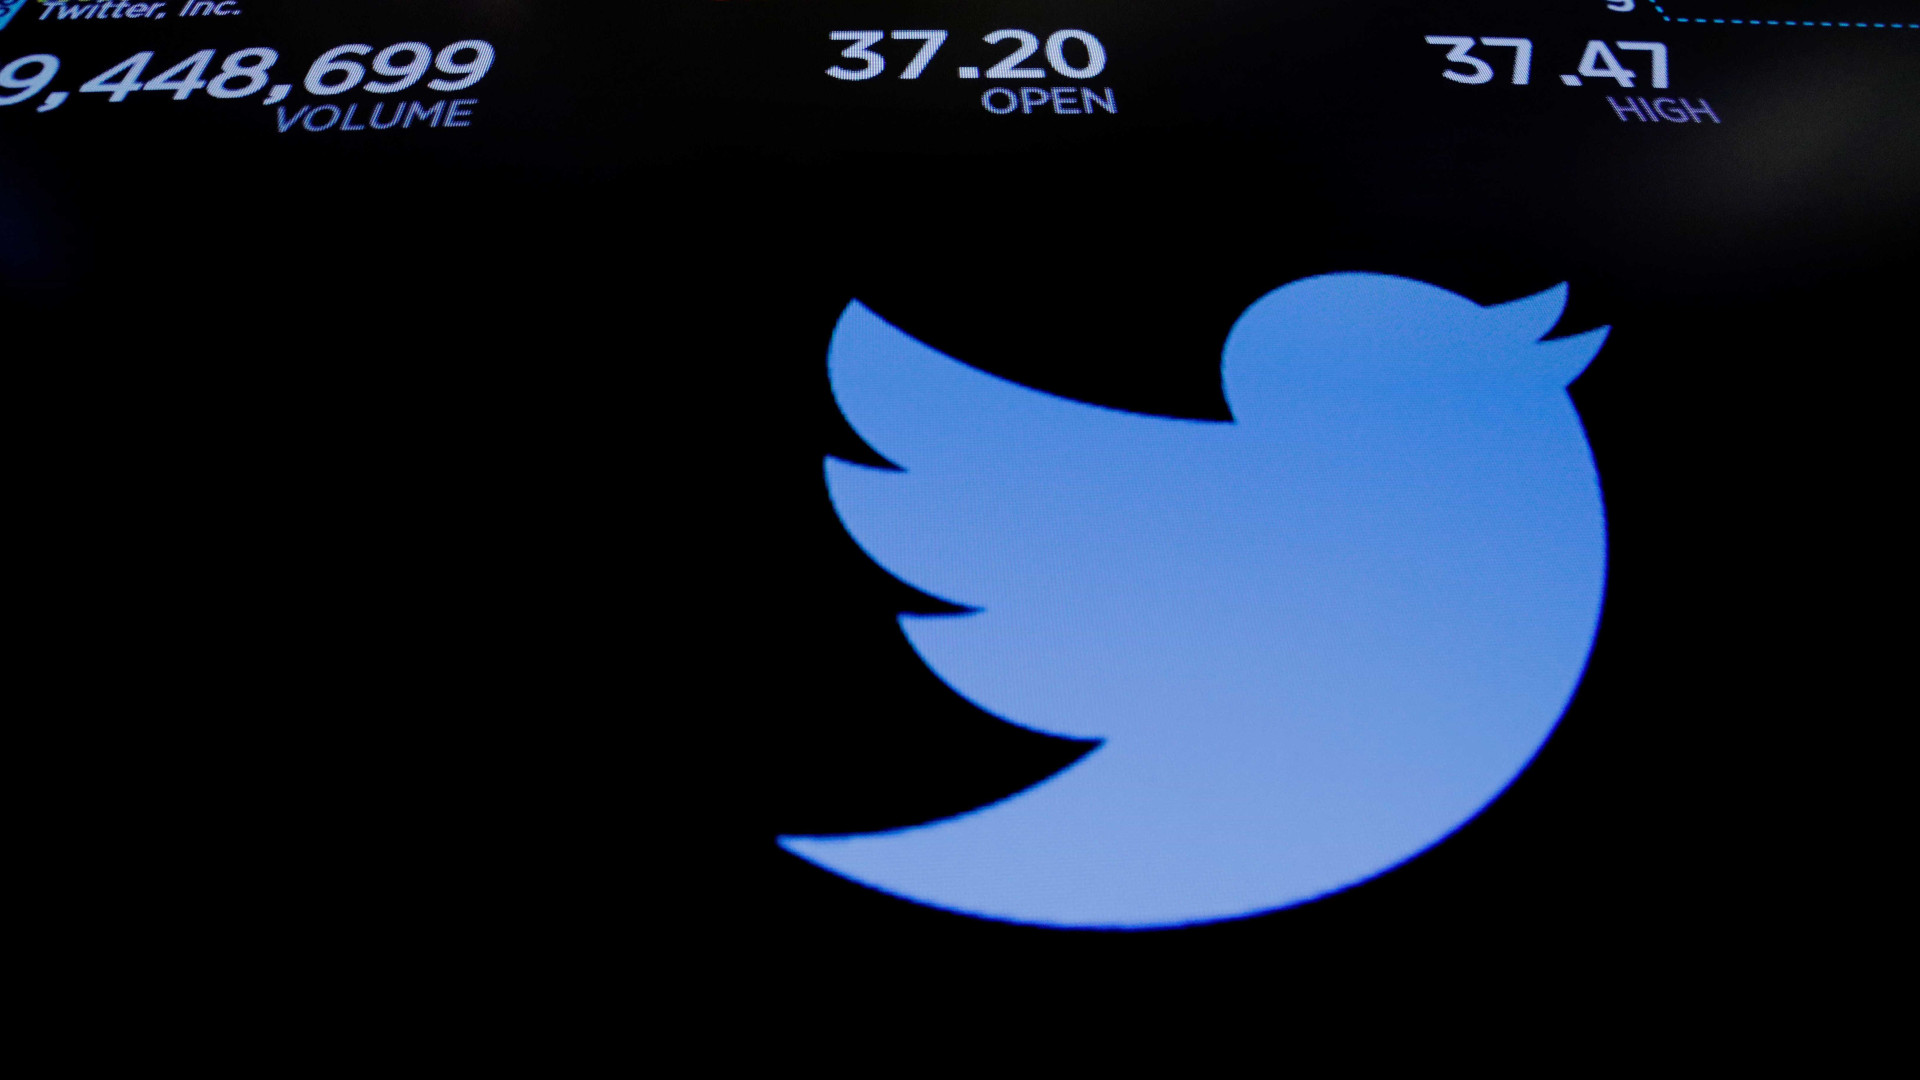 Lucro do Twitter cresce 250%, mas rede perde usuário